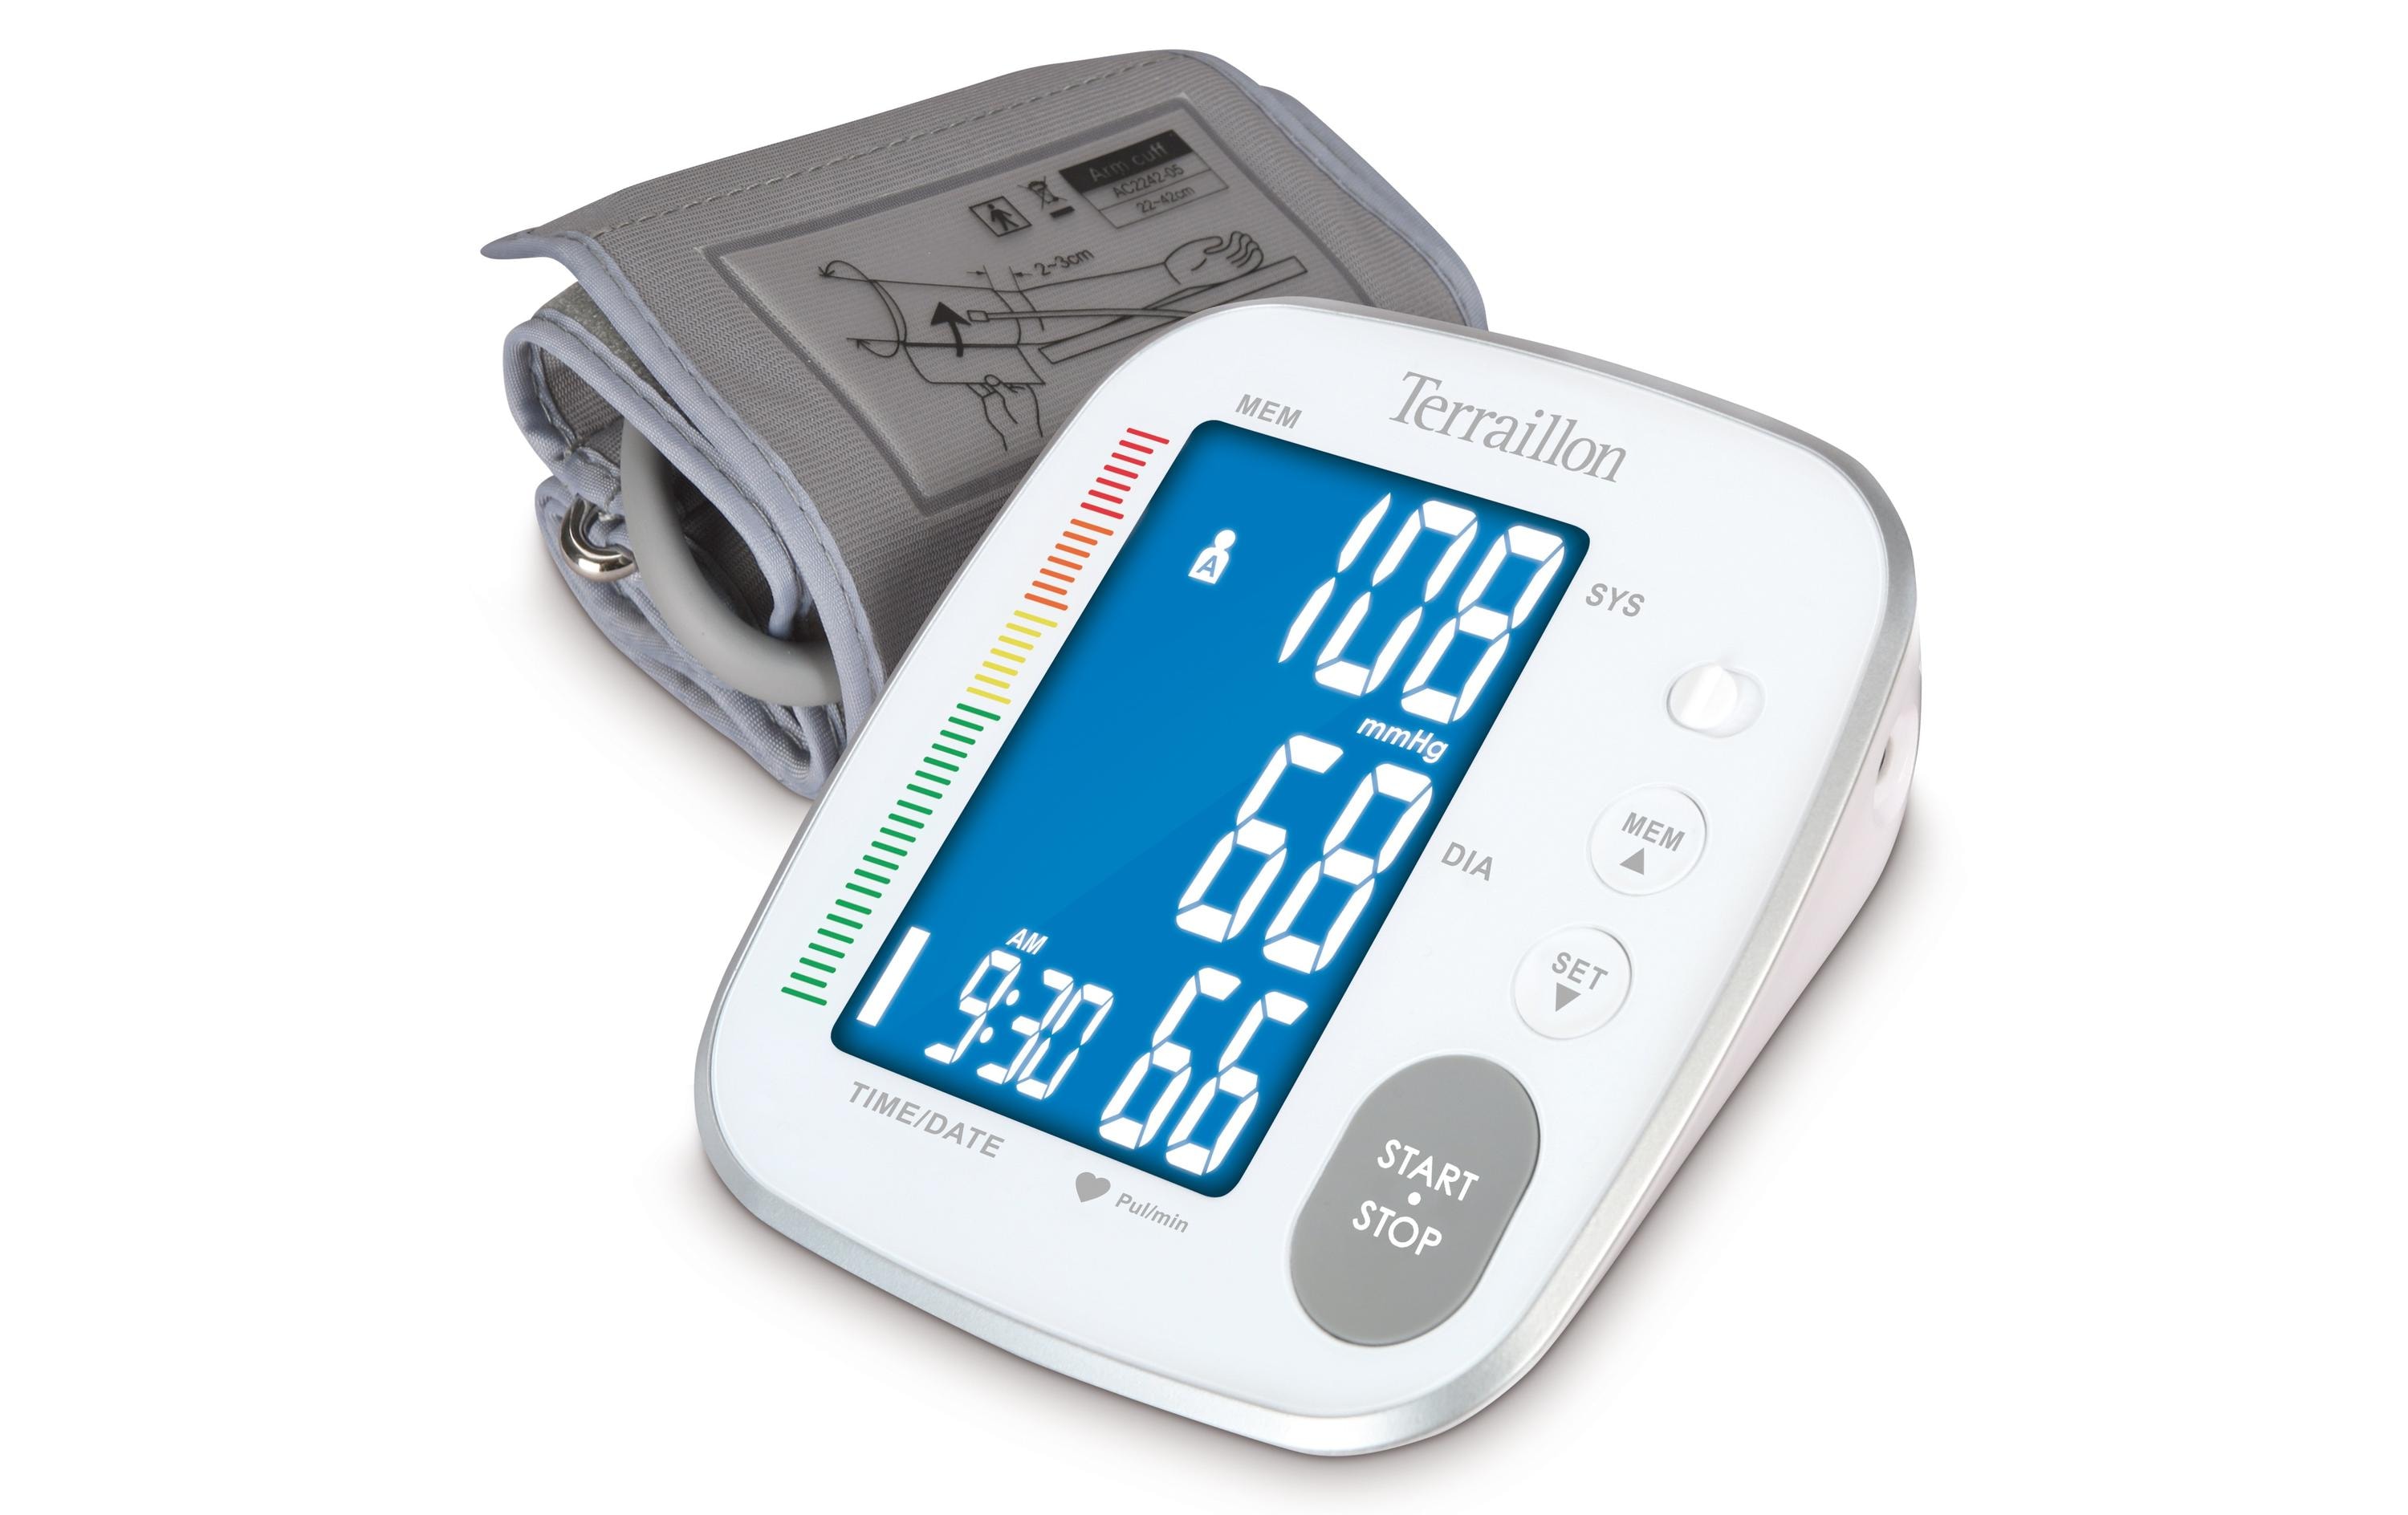 Terraillon Blutdruckmessgerät Tensio Bras